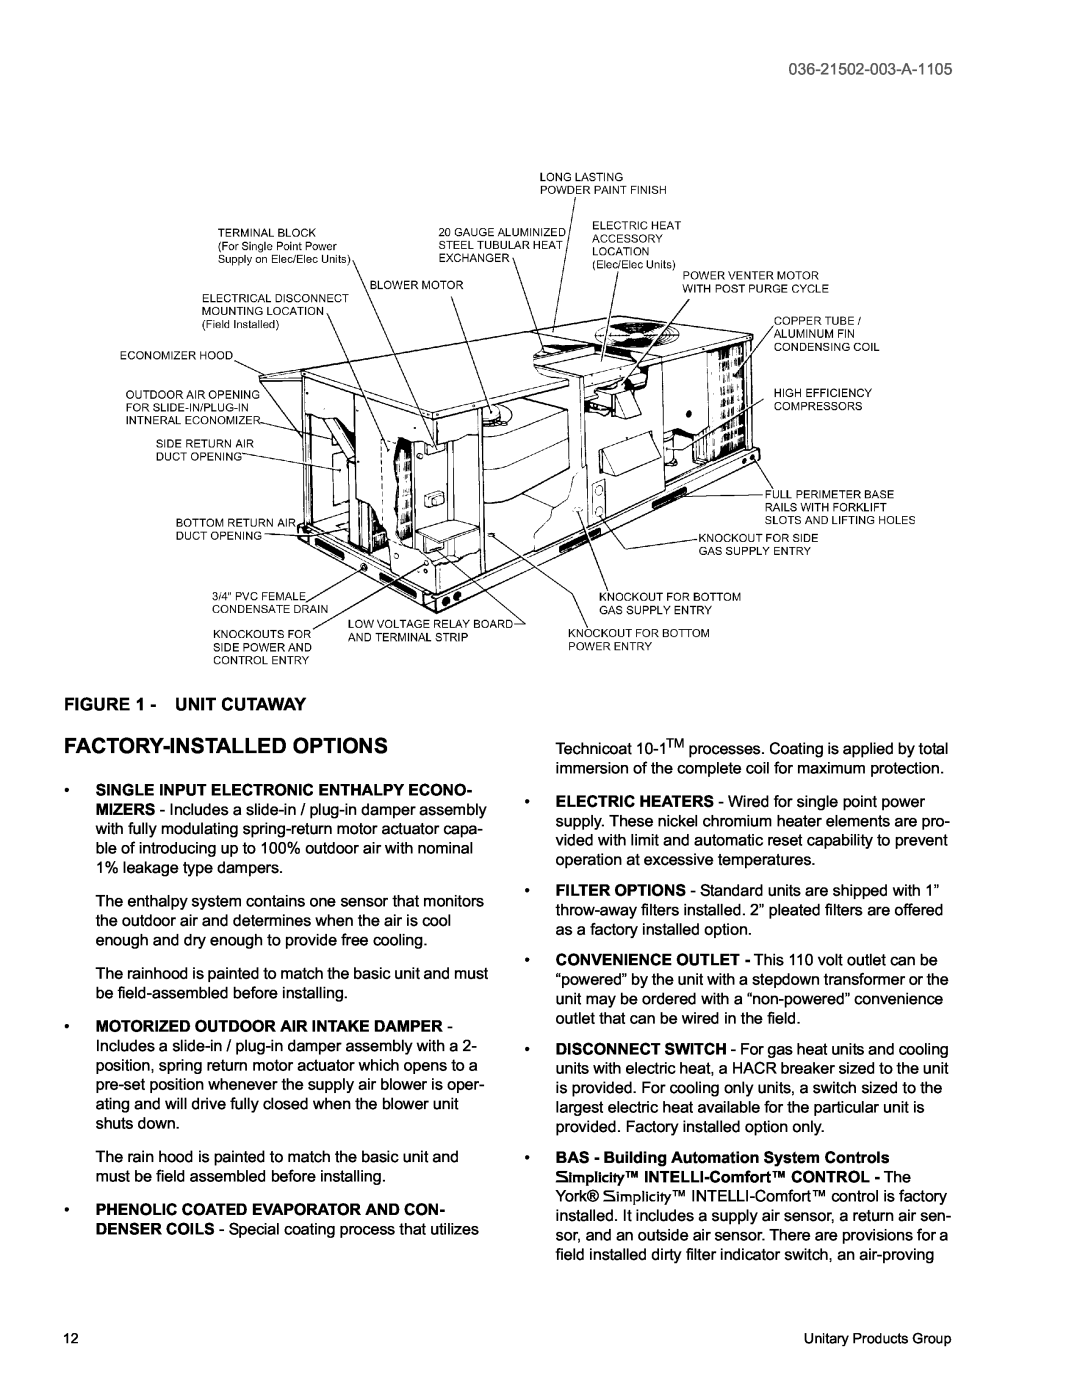 York DM 072 warranty Factory-Installedoptions, Unit Cutaway, 036-21502-003-A-1105 